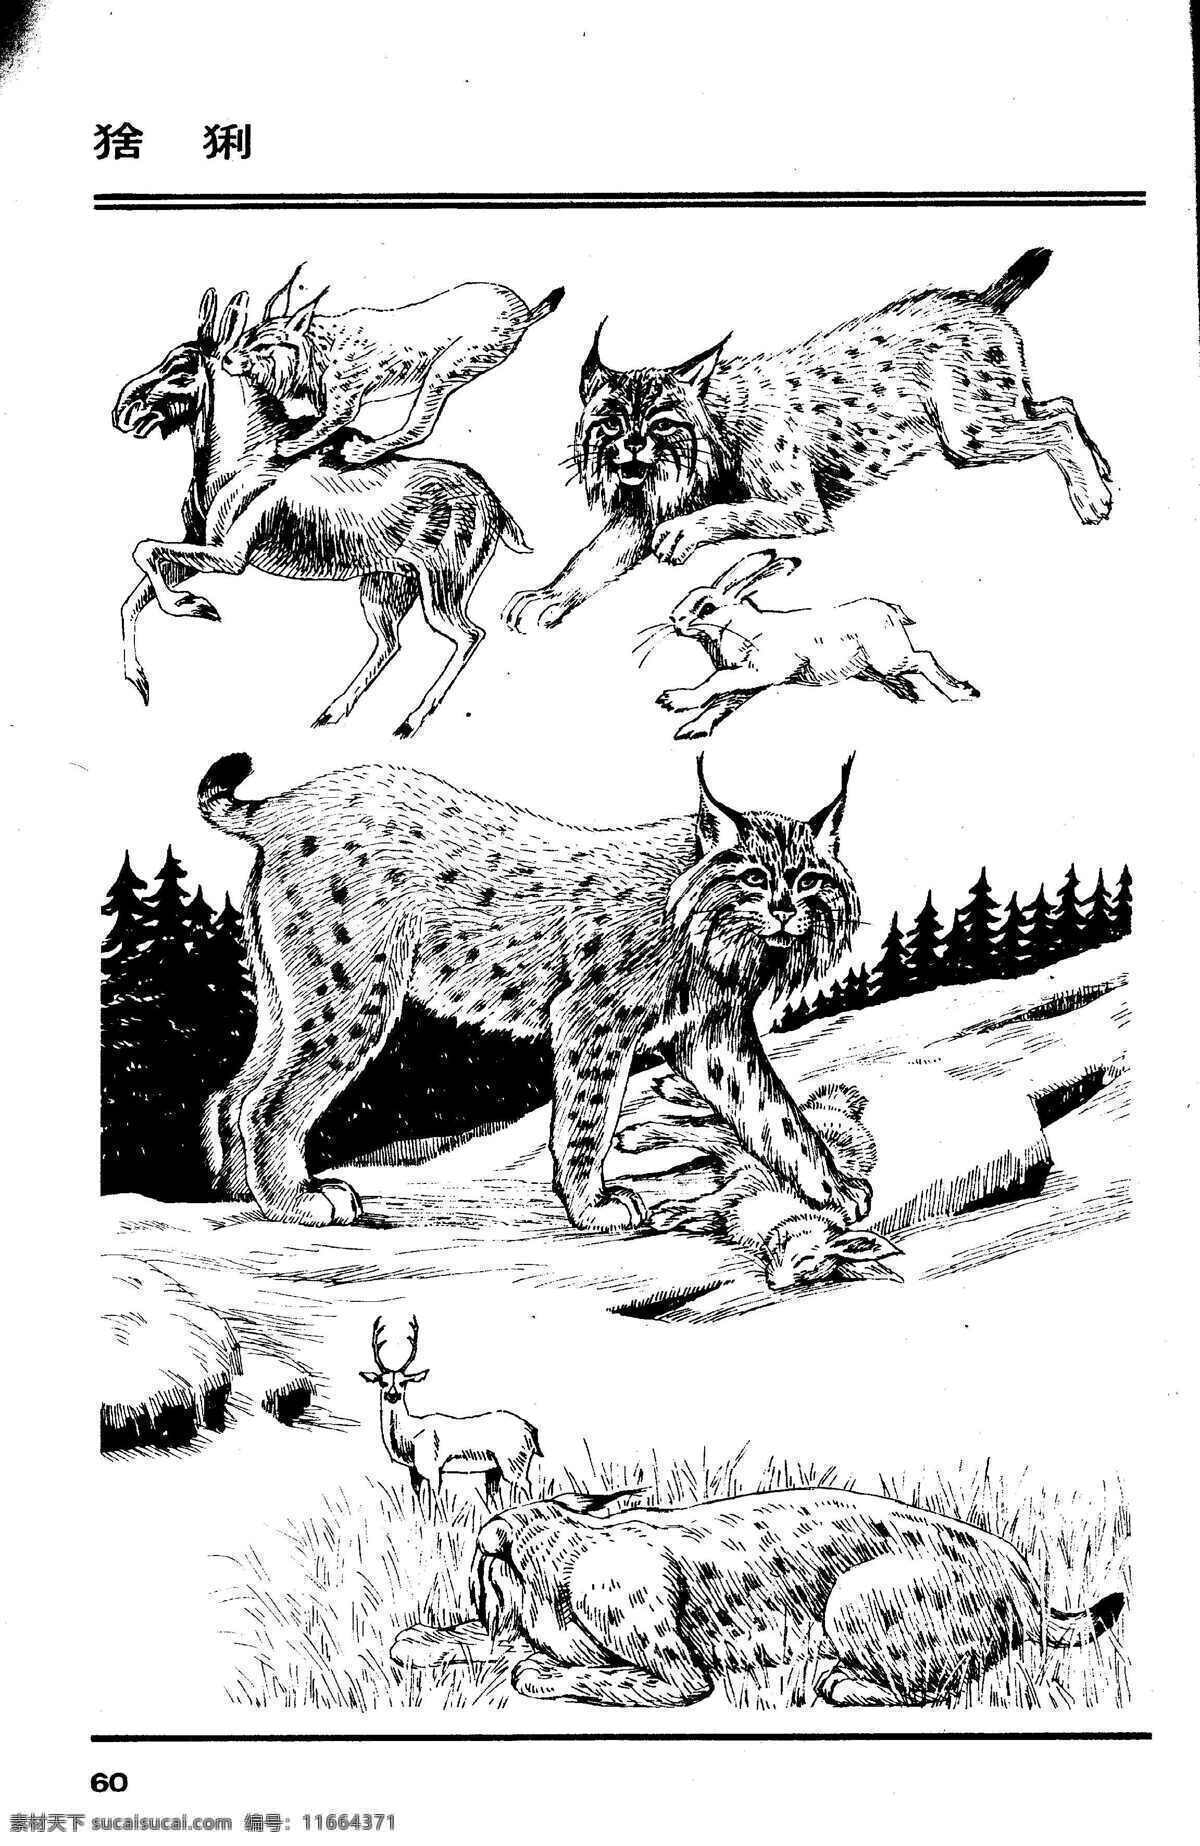 画兽谱64 猞猁 百兽 兽 家禽 猛兽 动物 白描 线描 绘画 美术 禽兽 野生动物 画兽谱 生物世界 设计图库